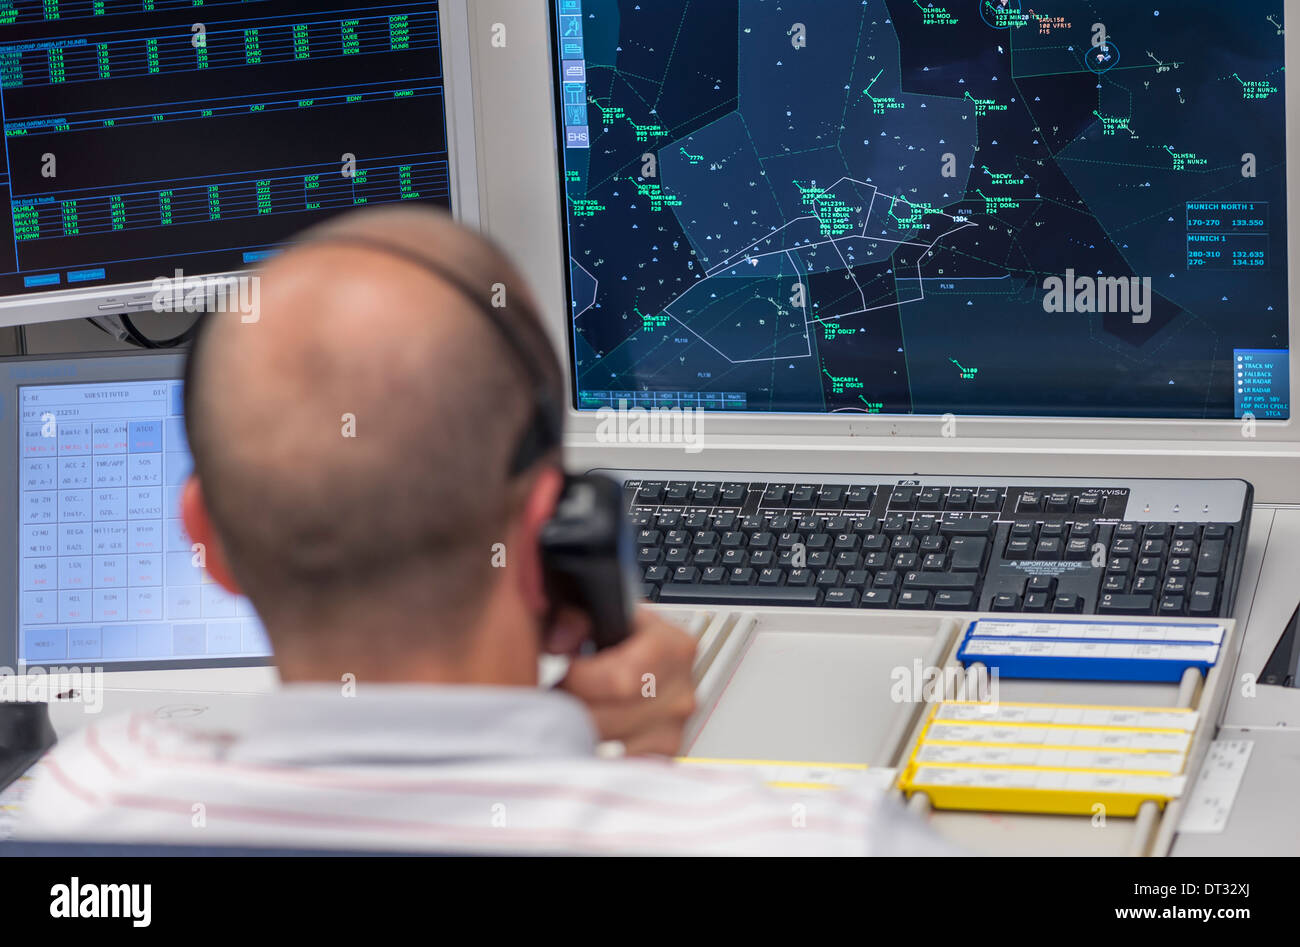 Un contrôleur de la circulation aérienne dans le centre de contrôle aérien de 'Skyguide' est la navigation dans l'espace aérien d'avions à travers la Suisse Banque D'Images